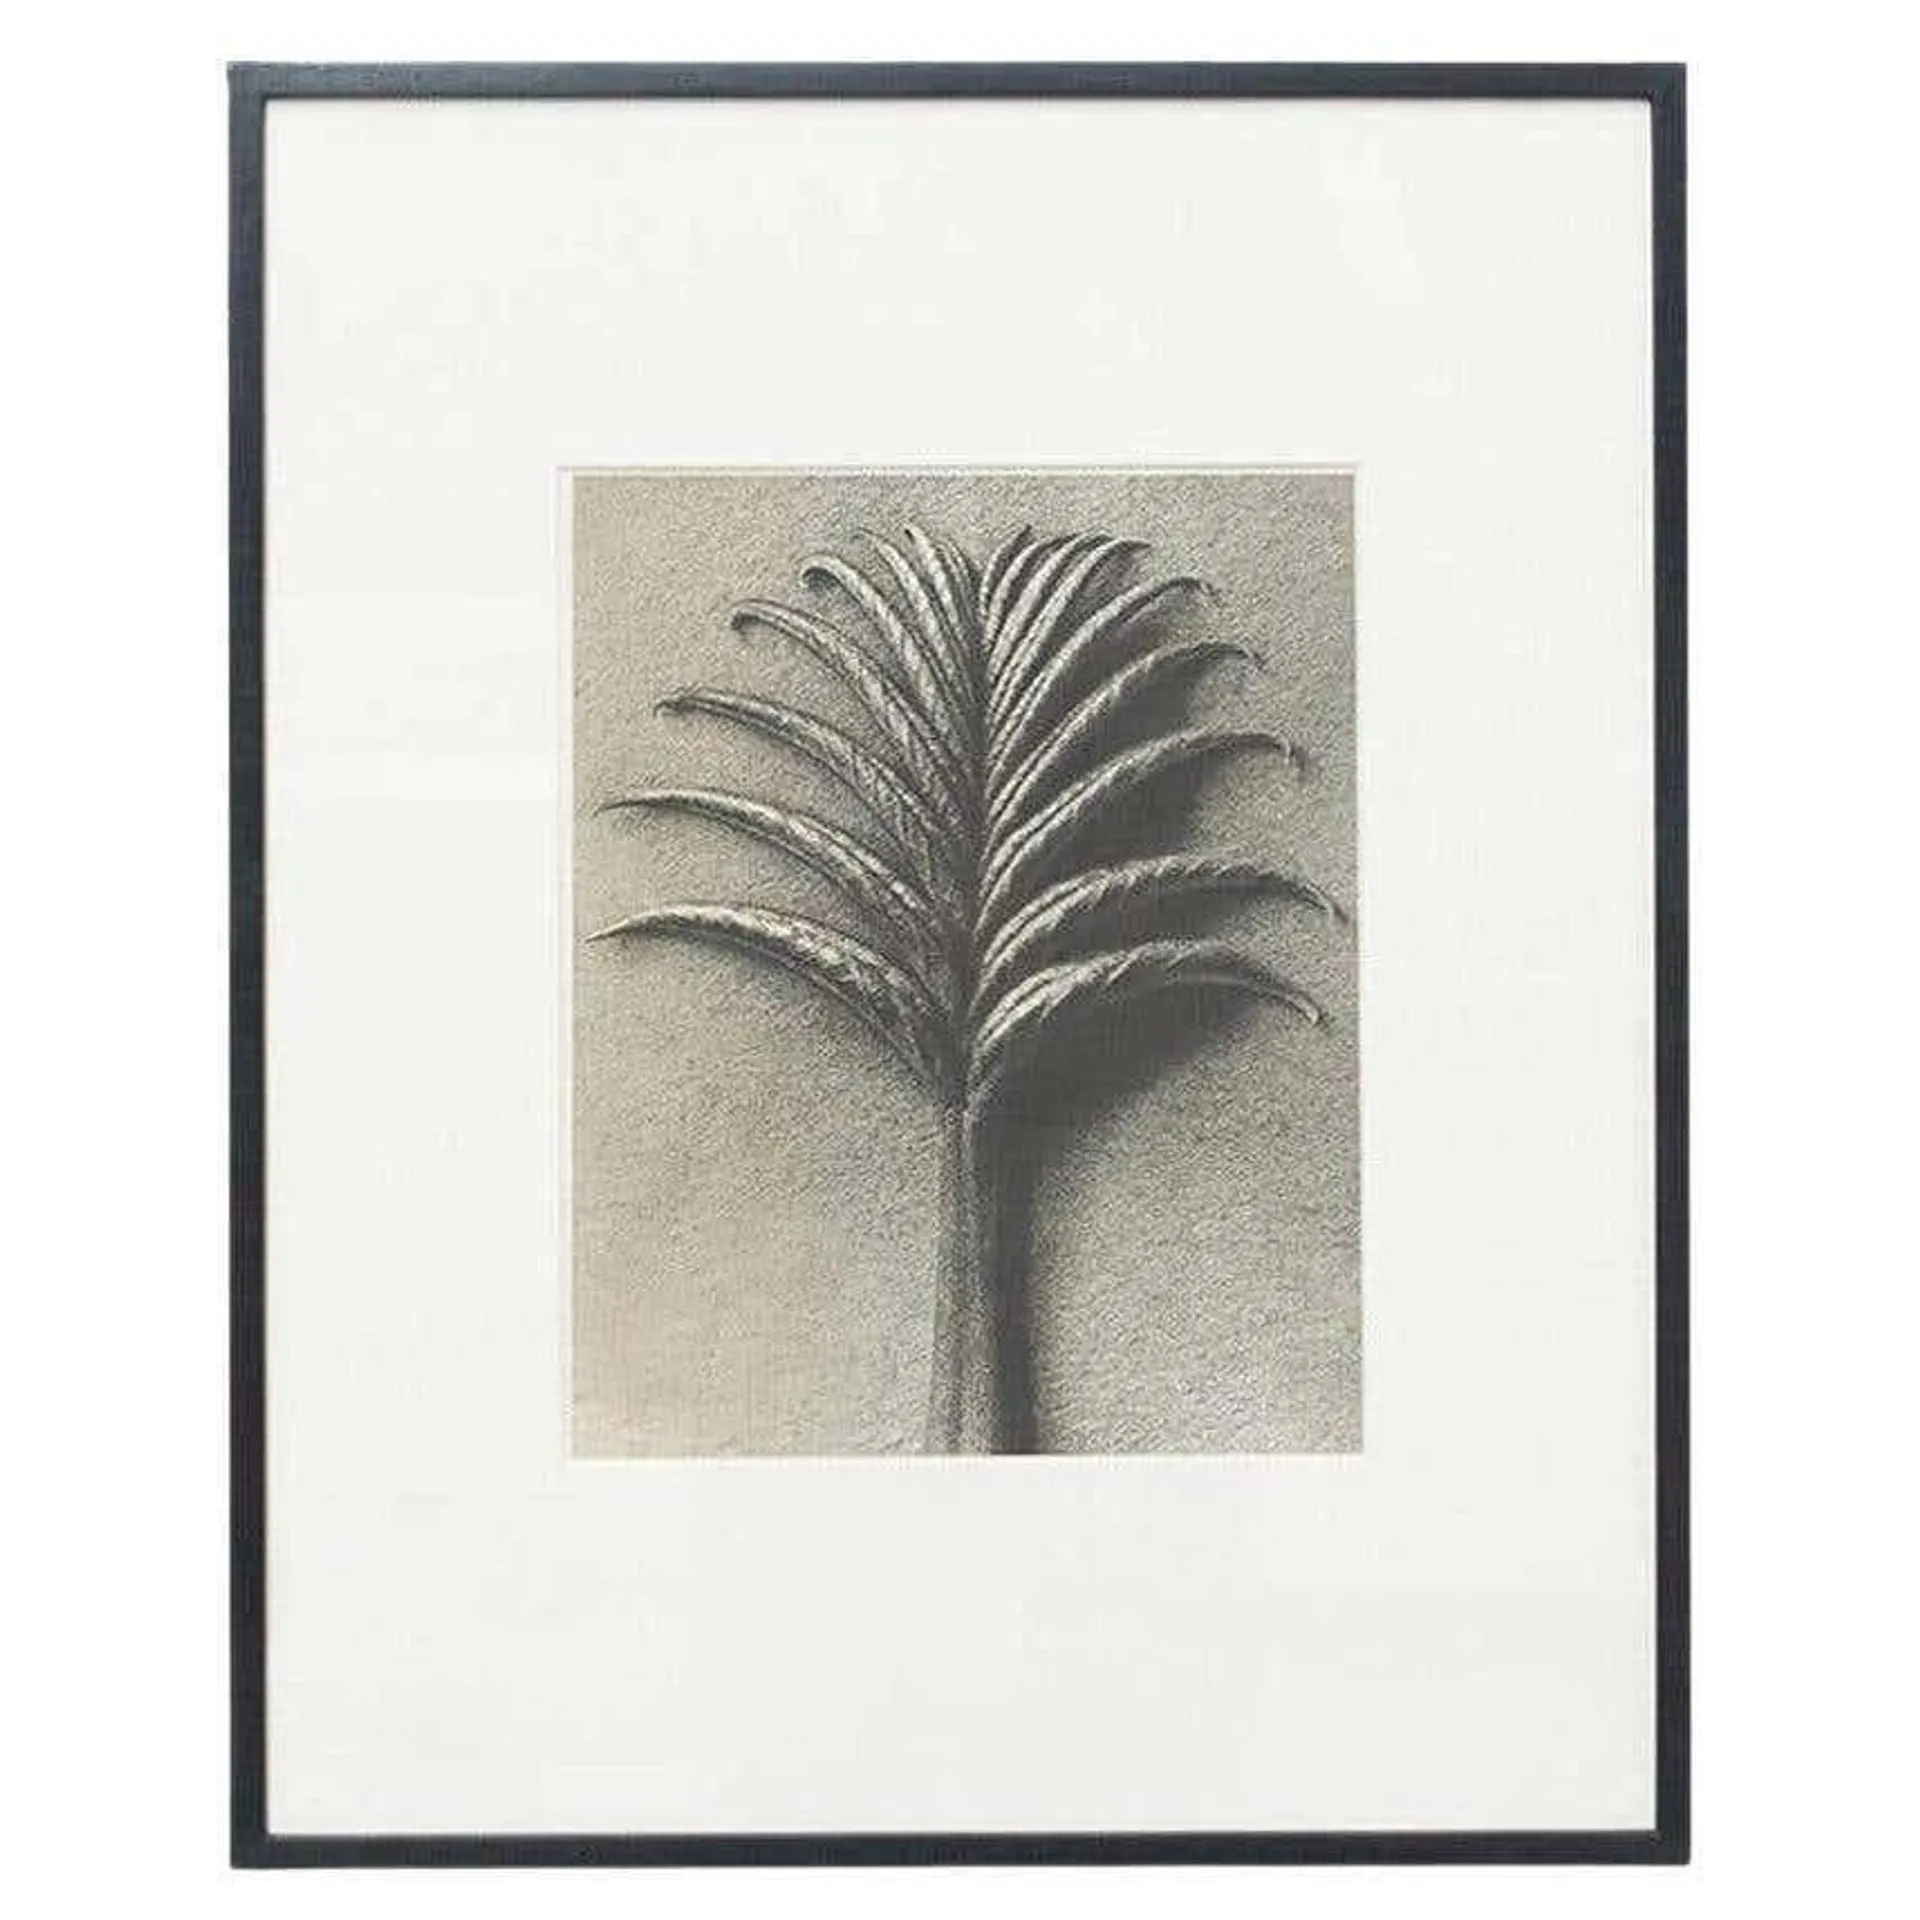 Karl Blossfeldt Black White Flower Photogravure Botanic Photography, 1942